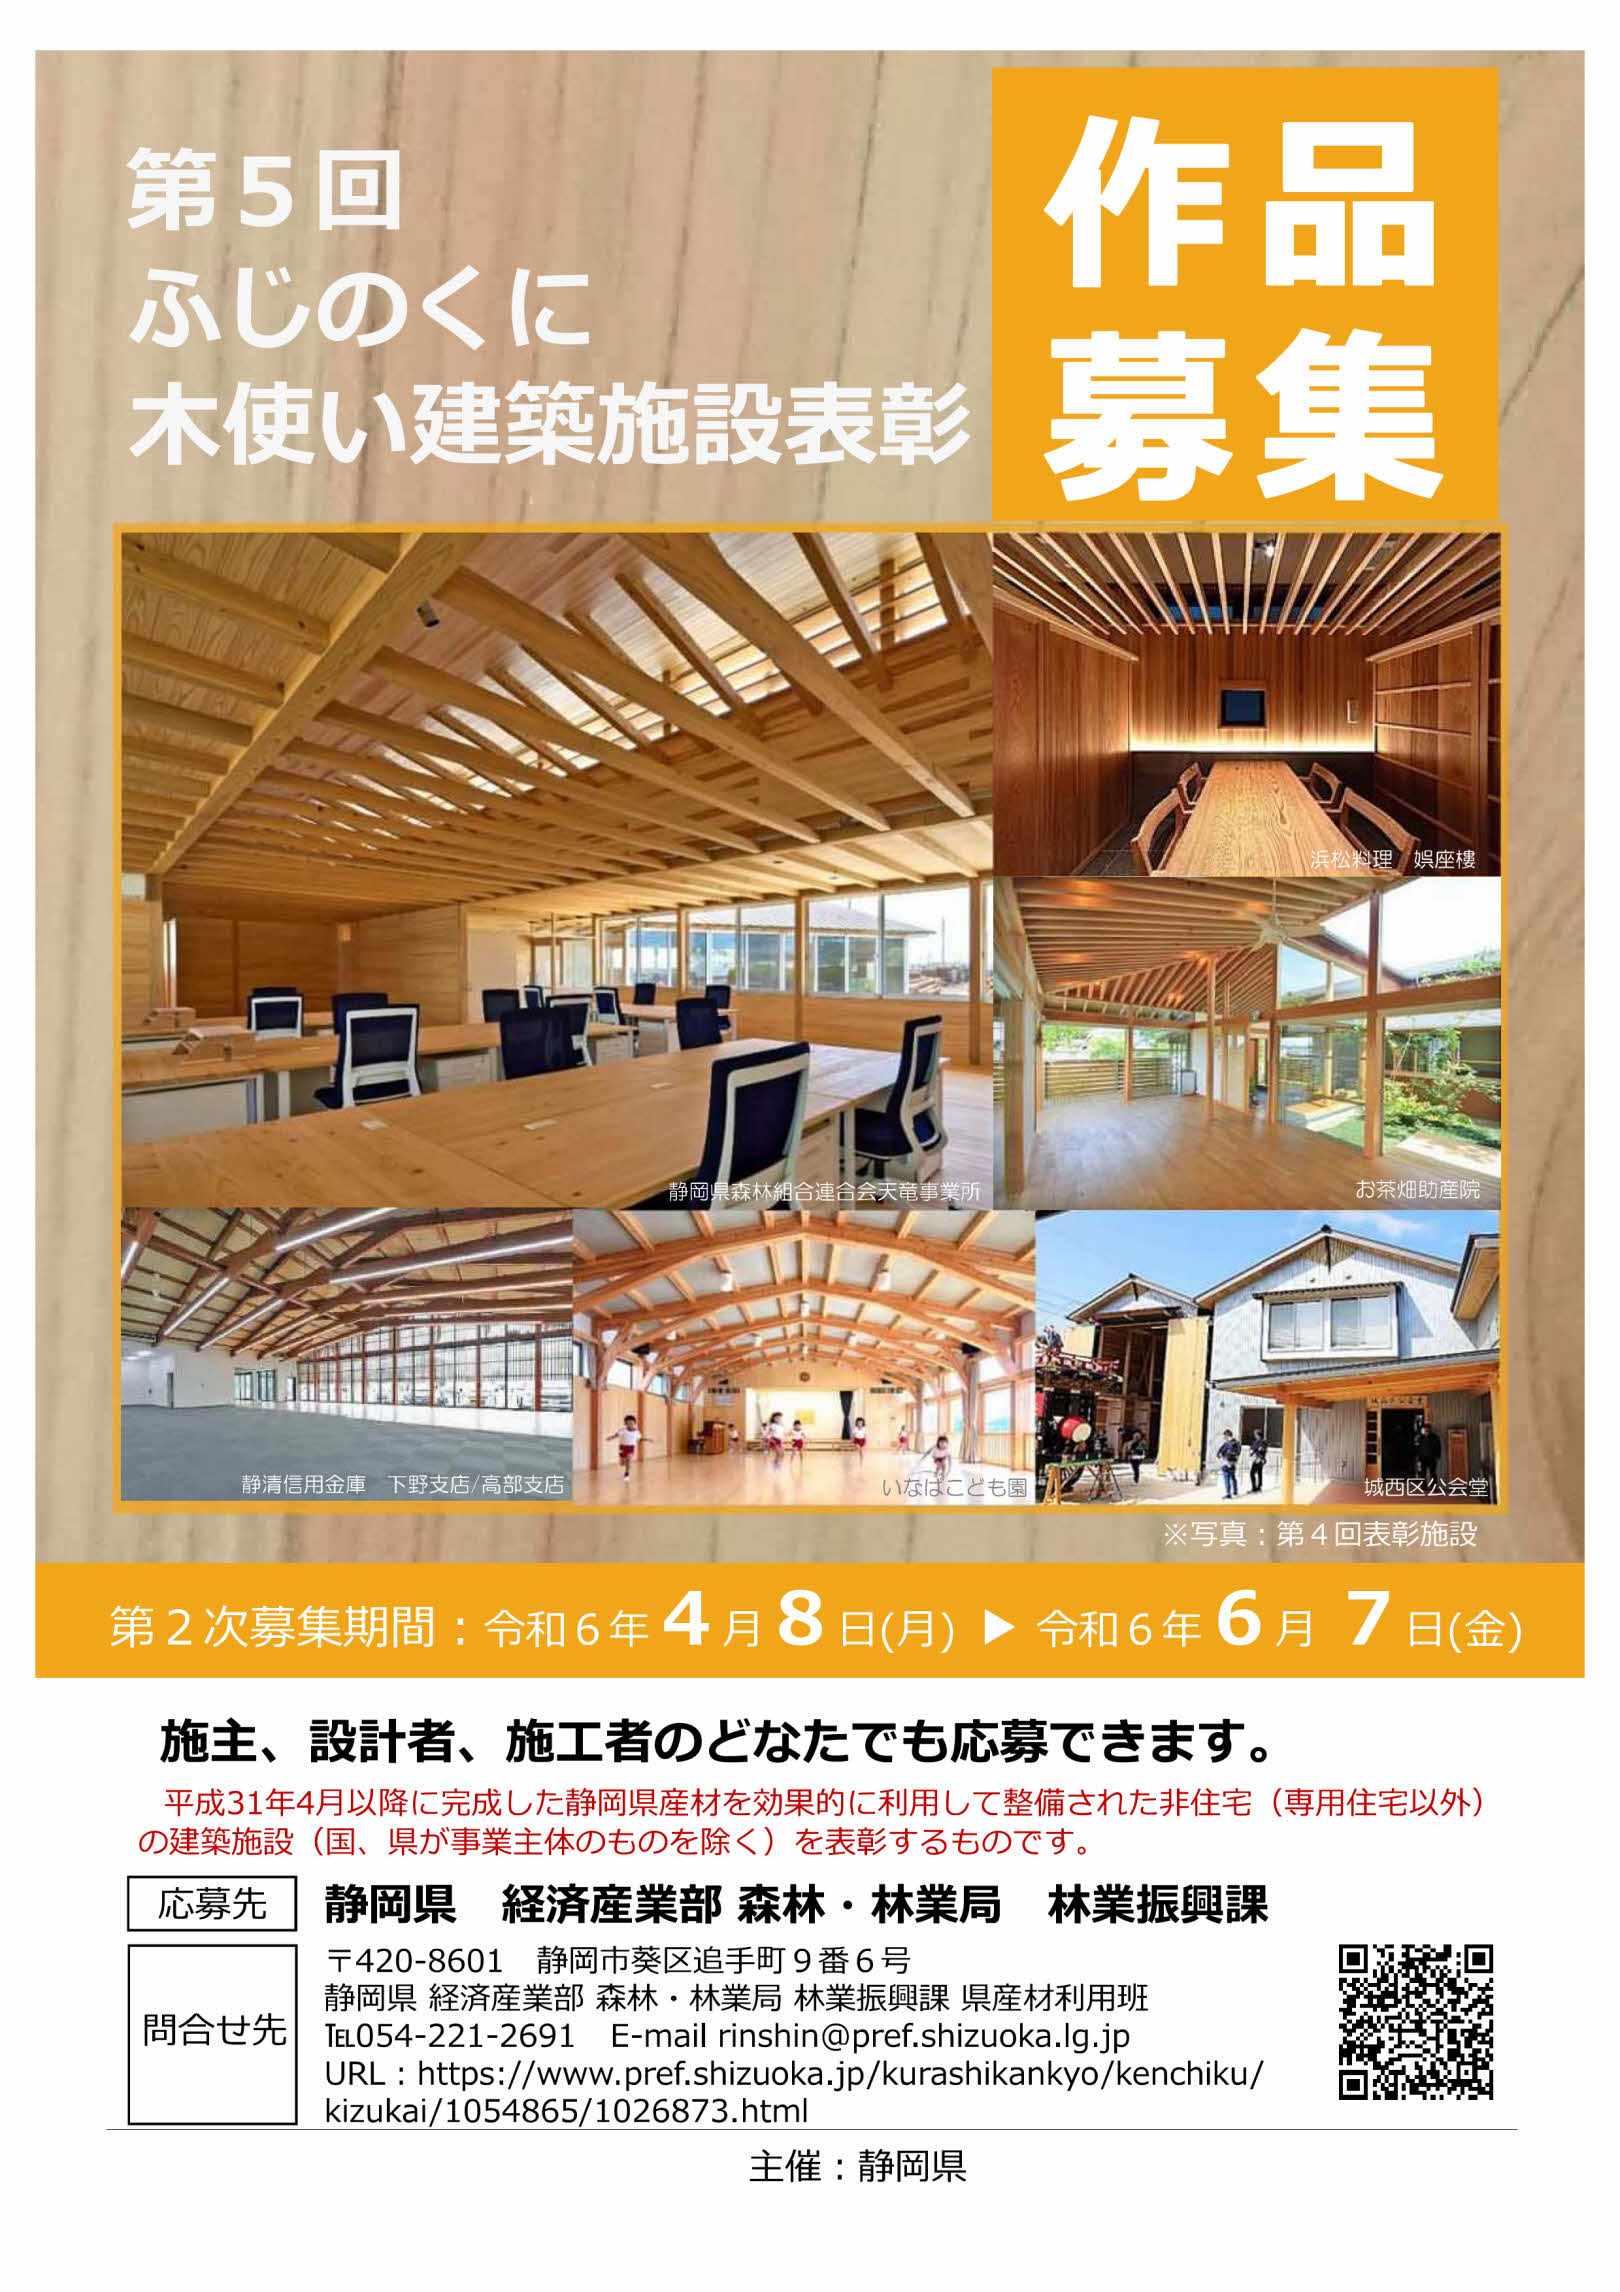 R6ふじのくに木使い建築施設表彰リーフレット_page001.jpg